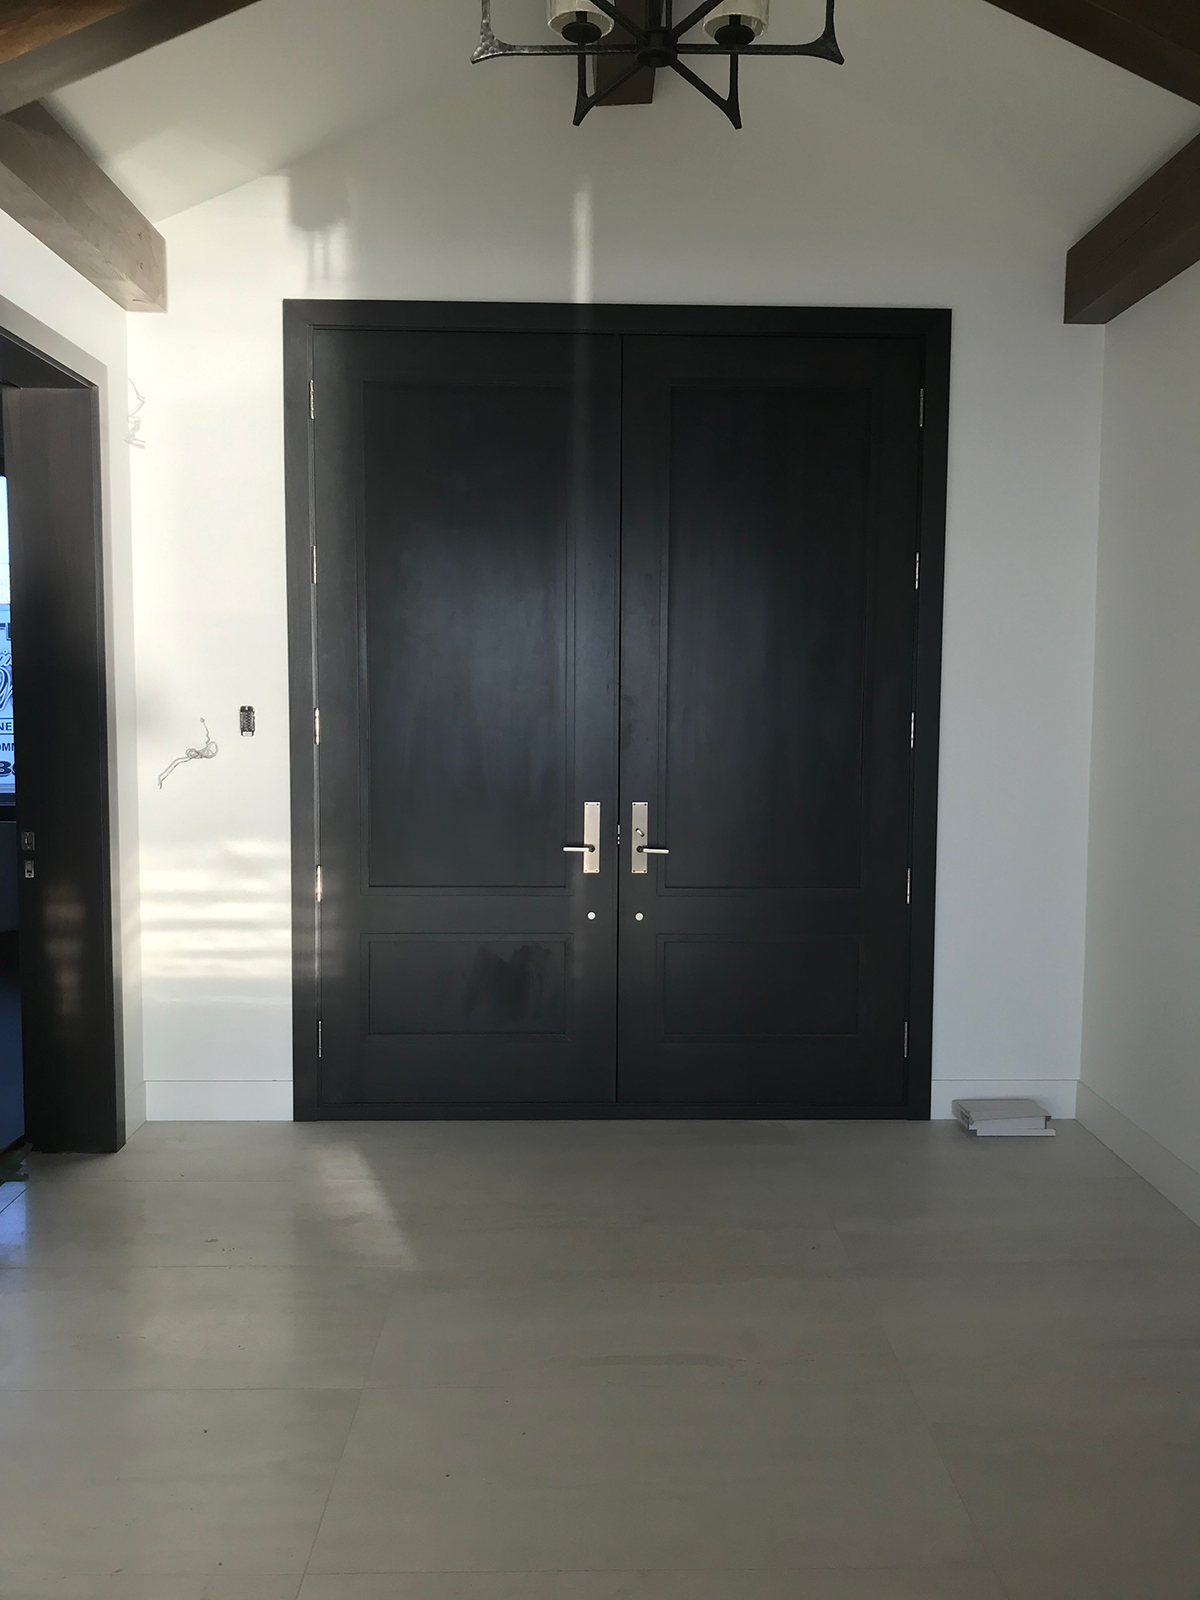 design interior wooden doors